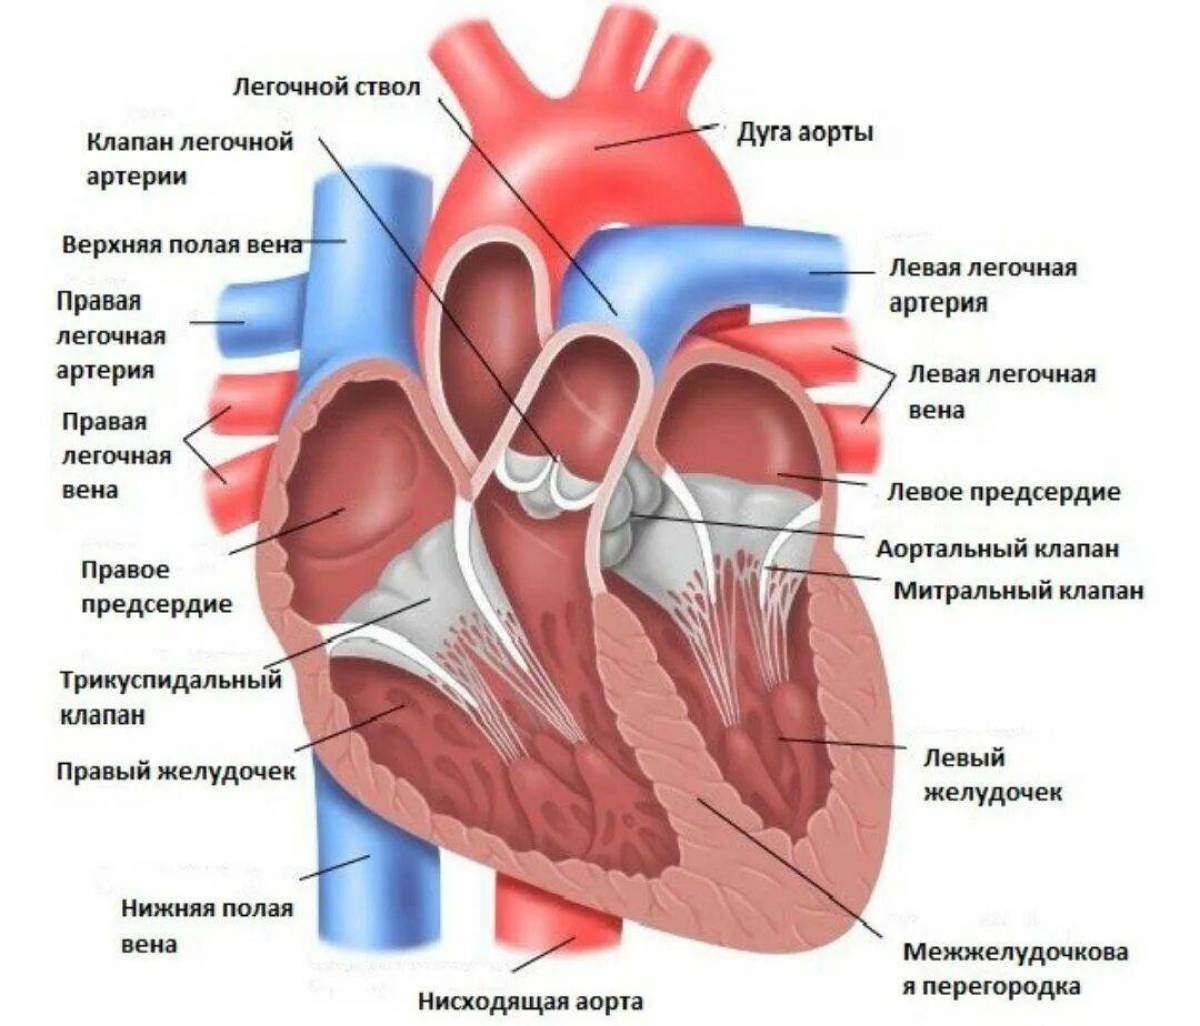 В левое предсердие открываются. Строение сердца анатомия клапан аорты. Полулунный клапан легочного ствола. Отверстия аорты и легочного ствола. Строение левого желудочка сердца анатомия.